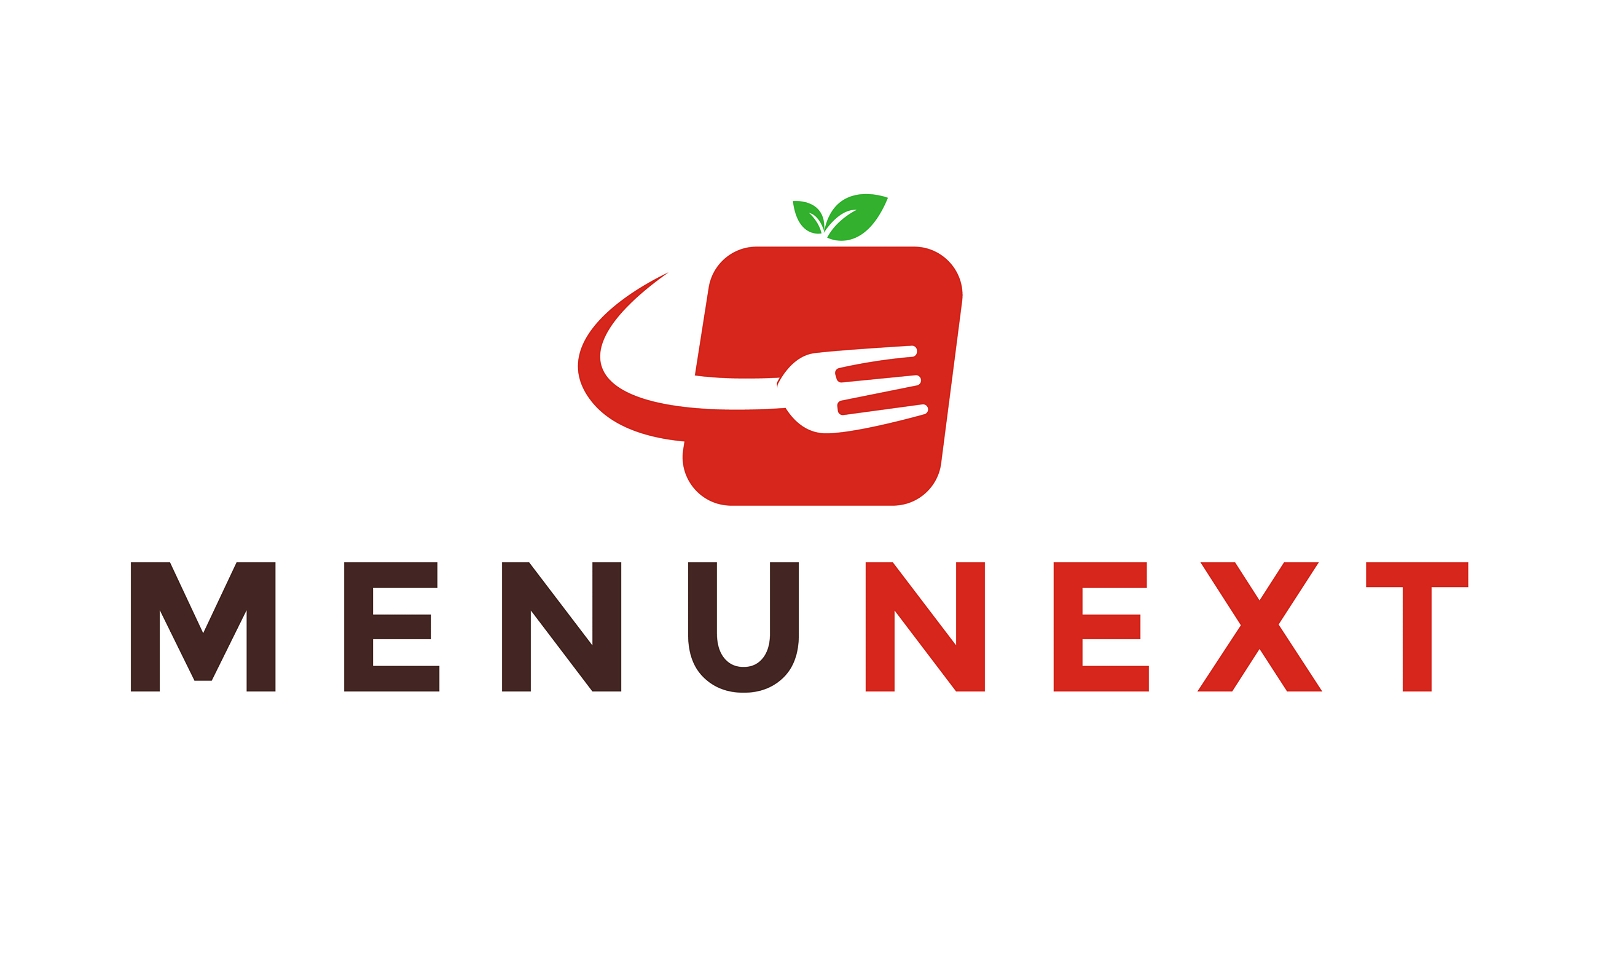 MenuNext.com - Creative brandable domain for sale